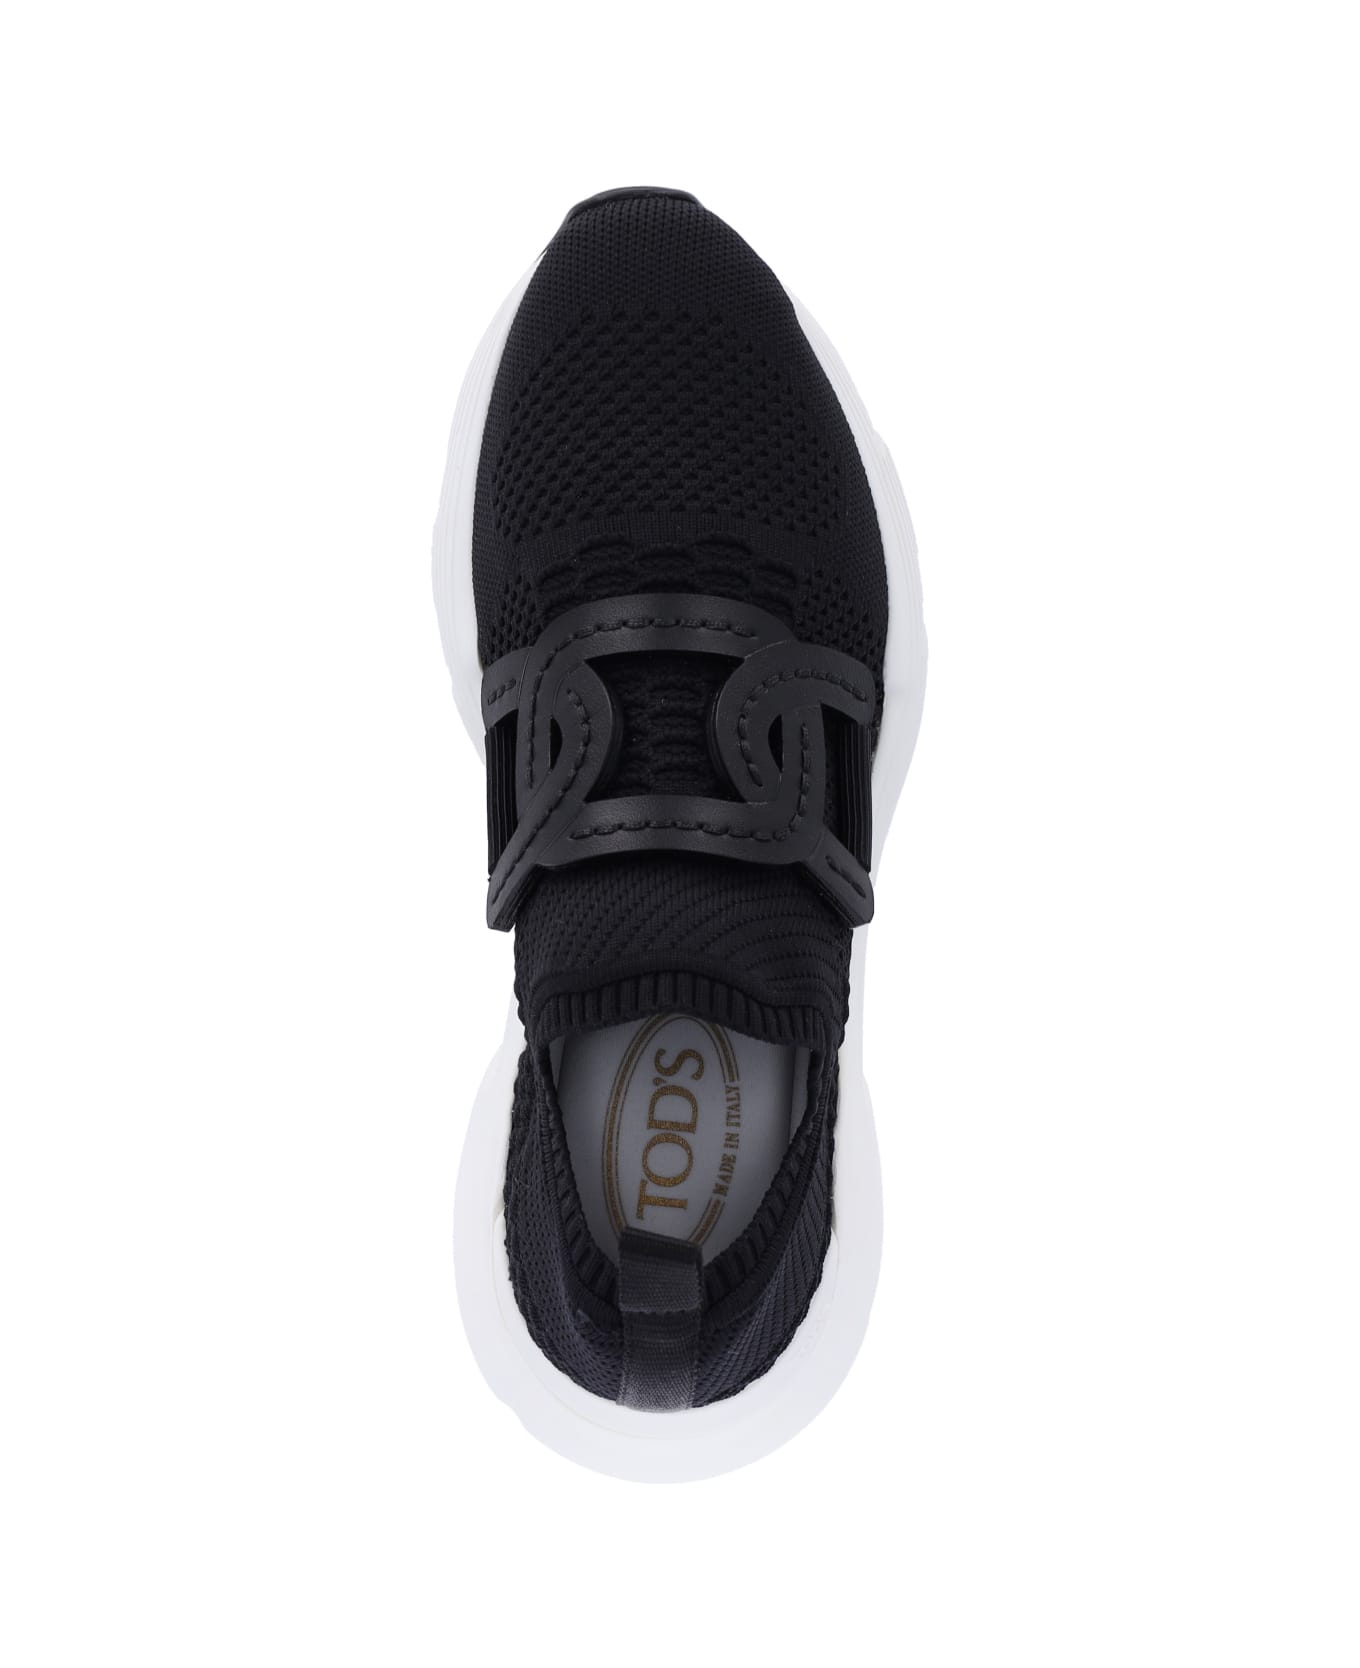 Tod's "kate" Sneakers - Black  